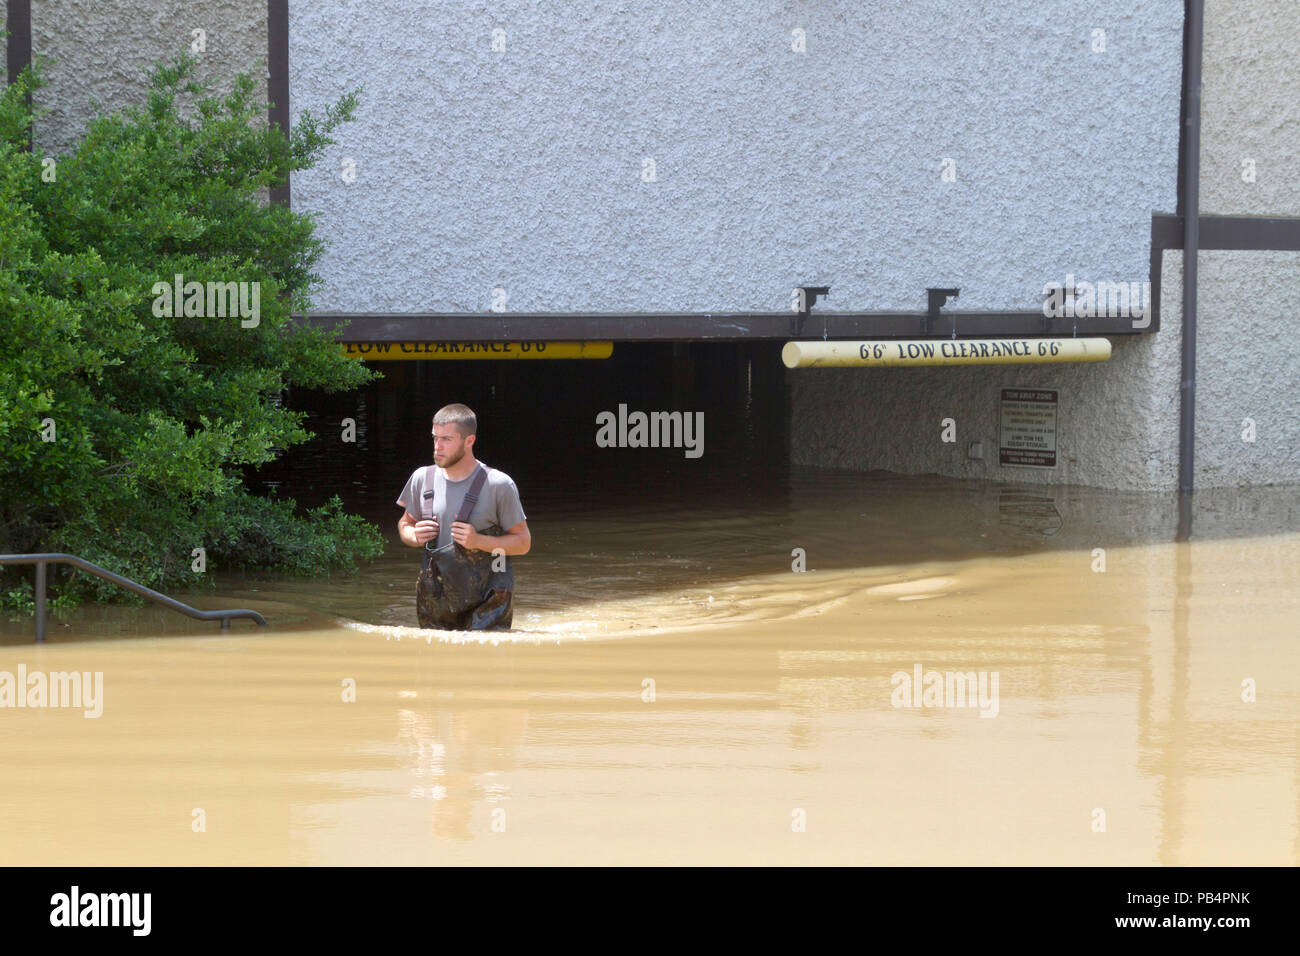 ASHEVILLE, North Carolina, USA - Mai 30, 2018: Ein junger Mann watet durch Hip hohe schlammiges Wasser, während er sich von einem überfluteten niedrige Ebene Parkplatz Garage Stockfoto